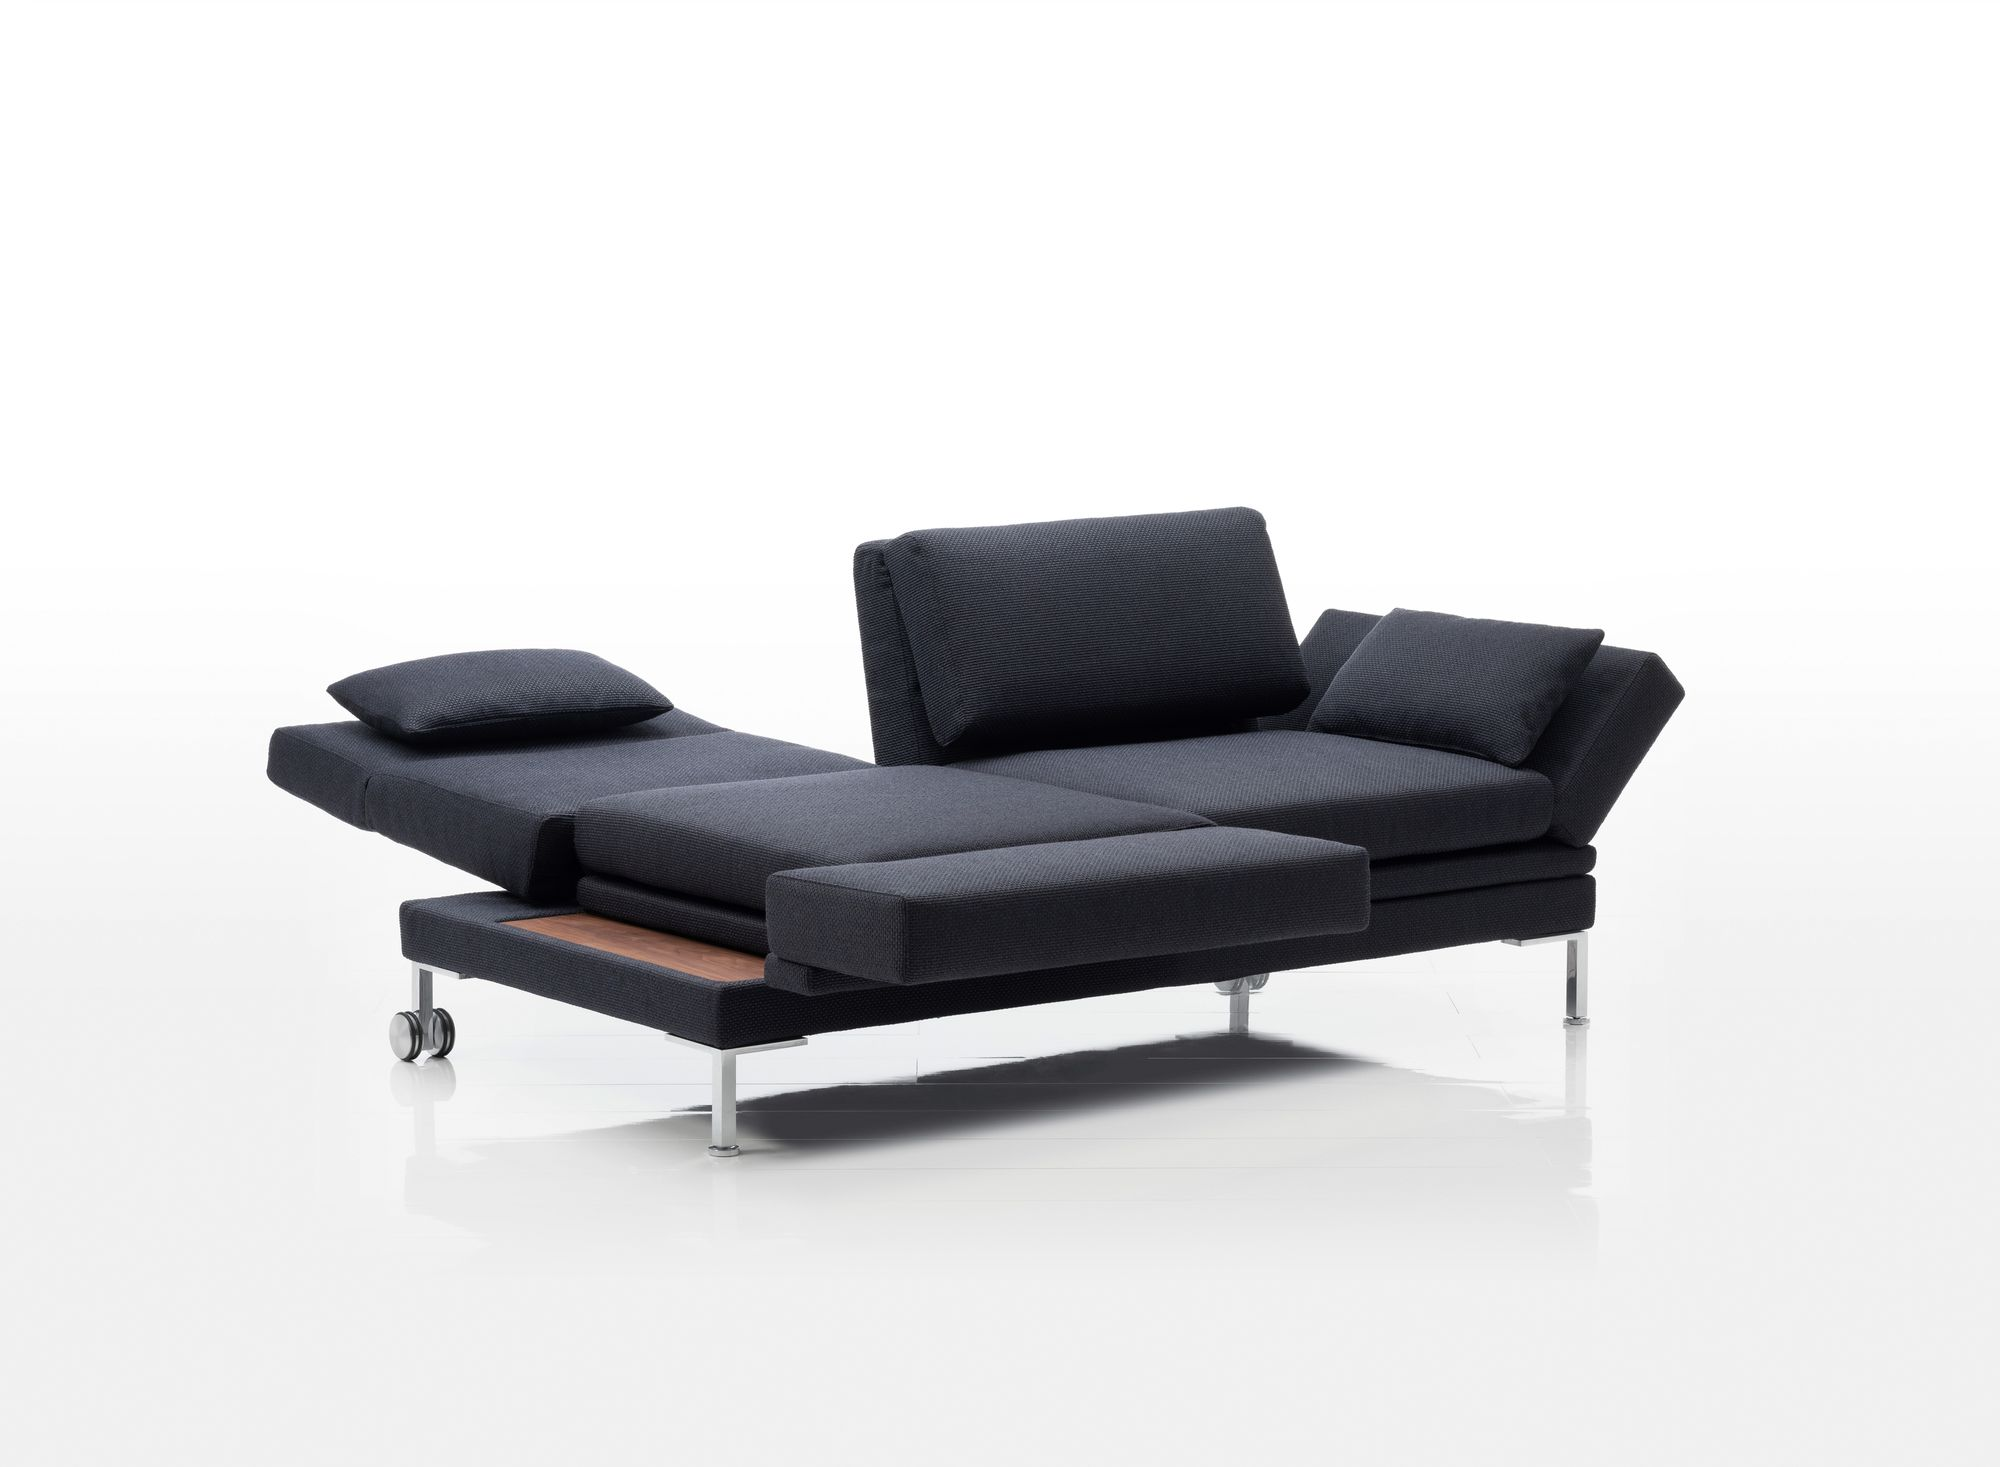 Brühl fold-out Schlafsofa - nur ein Beispiel der Konzepte Sofa und Schlafsofa in einem Produkt zu vereinen